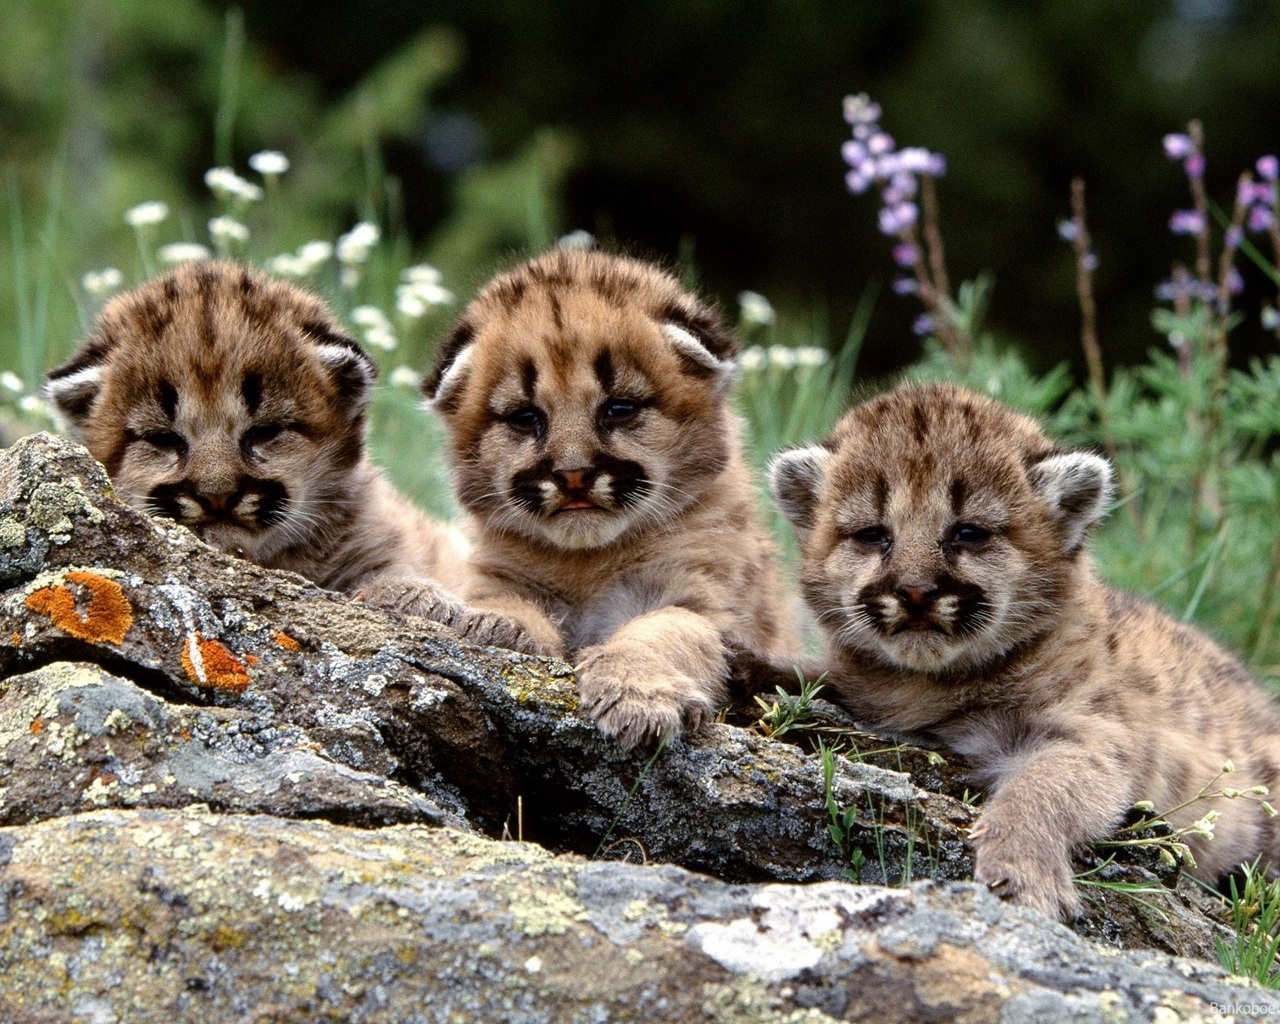 Free download wallpaper Animal, Cougar, Baby Animal on your PC desktop